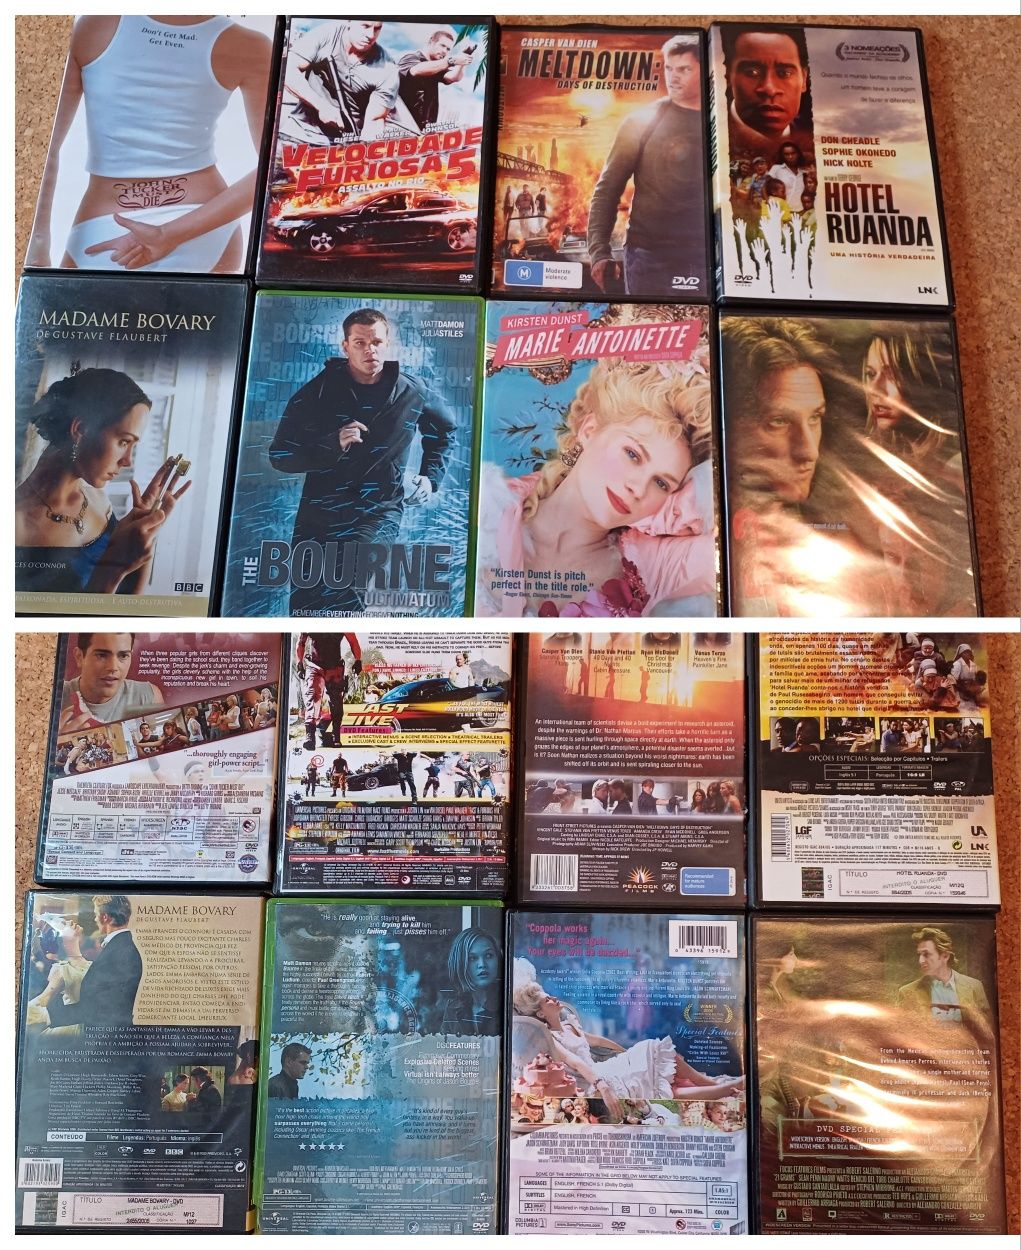 filmes / DVD s, 40 diferentes, bom estado, vendo lote ou unidade